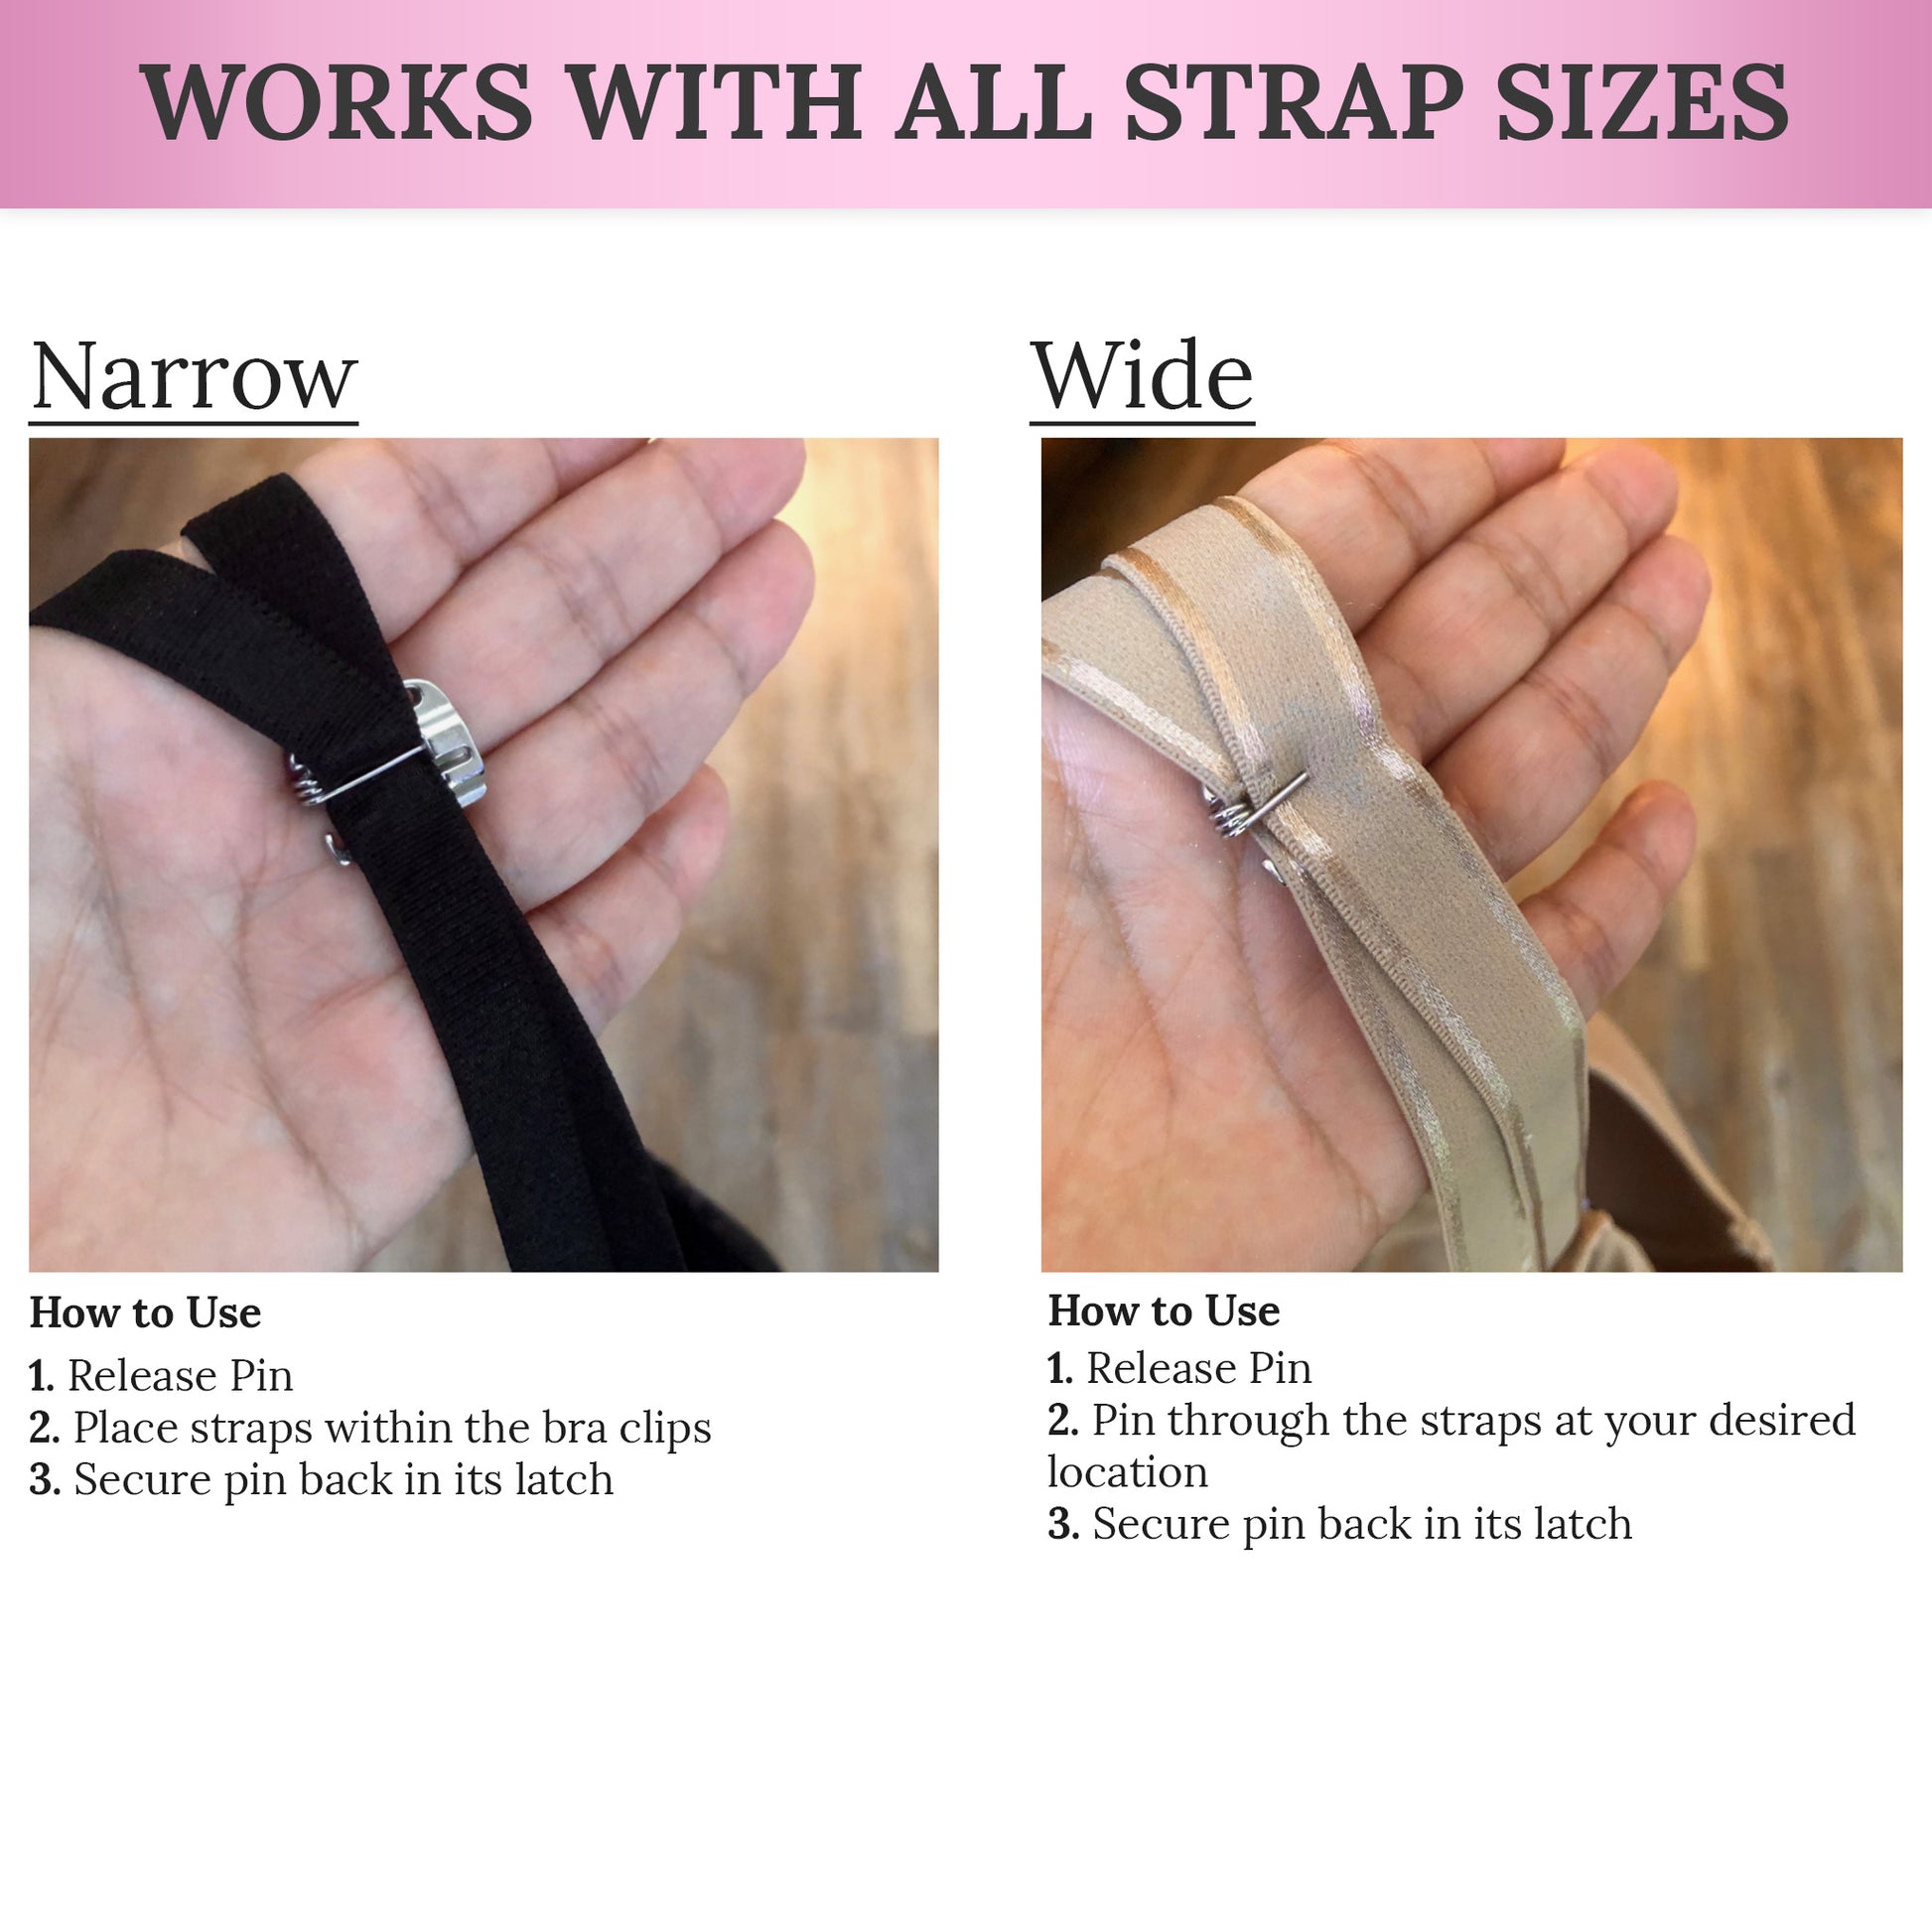 Adjustable low back bra strap converter hides bra straps